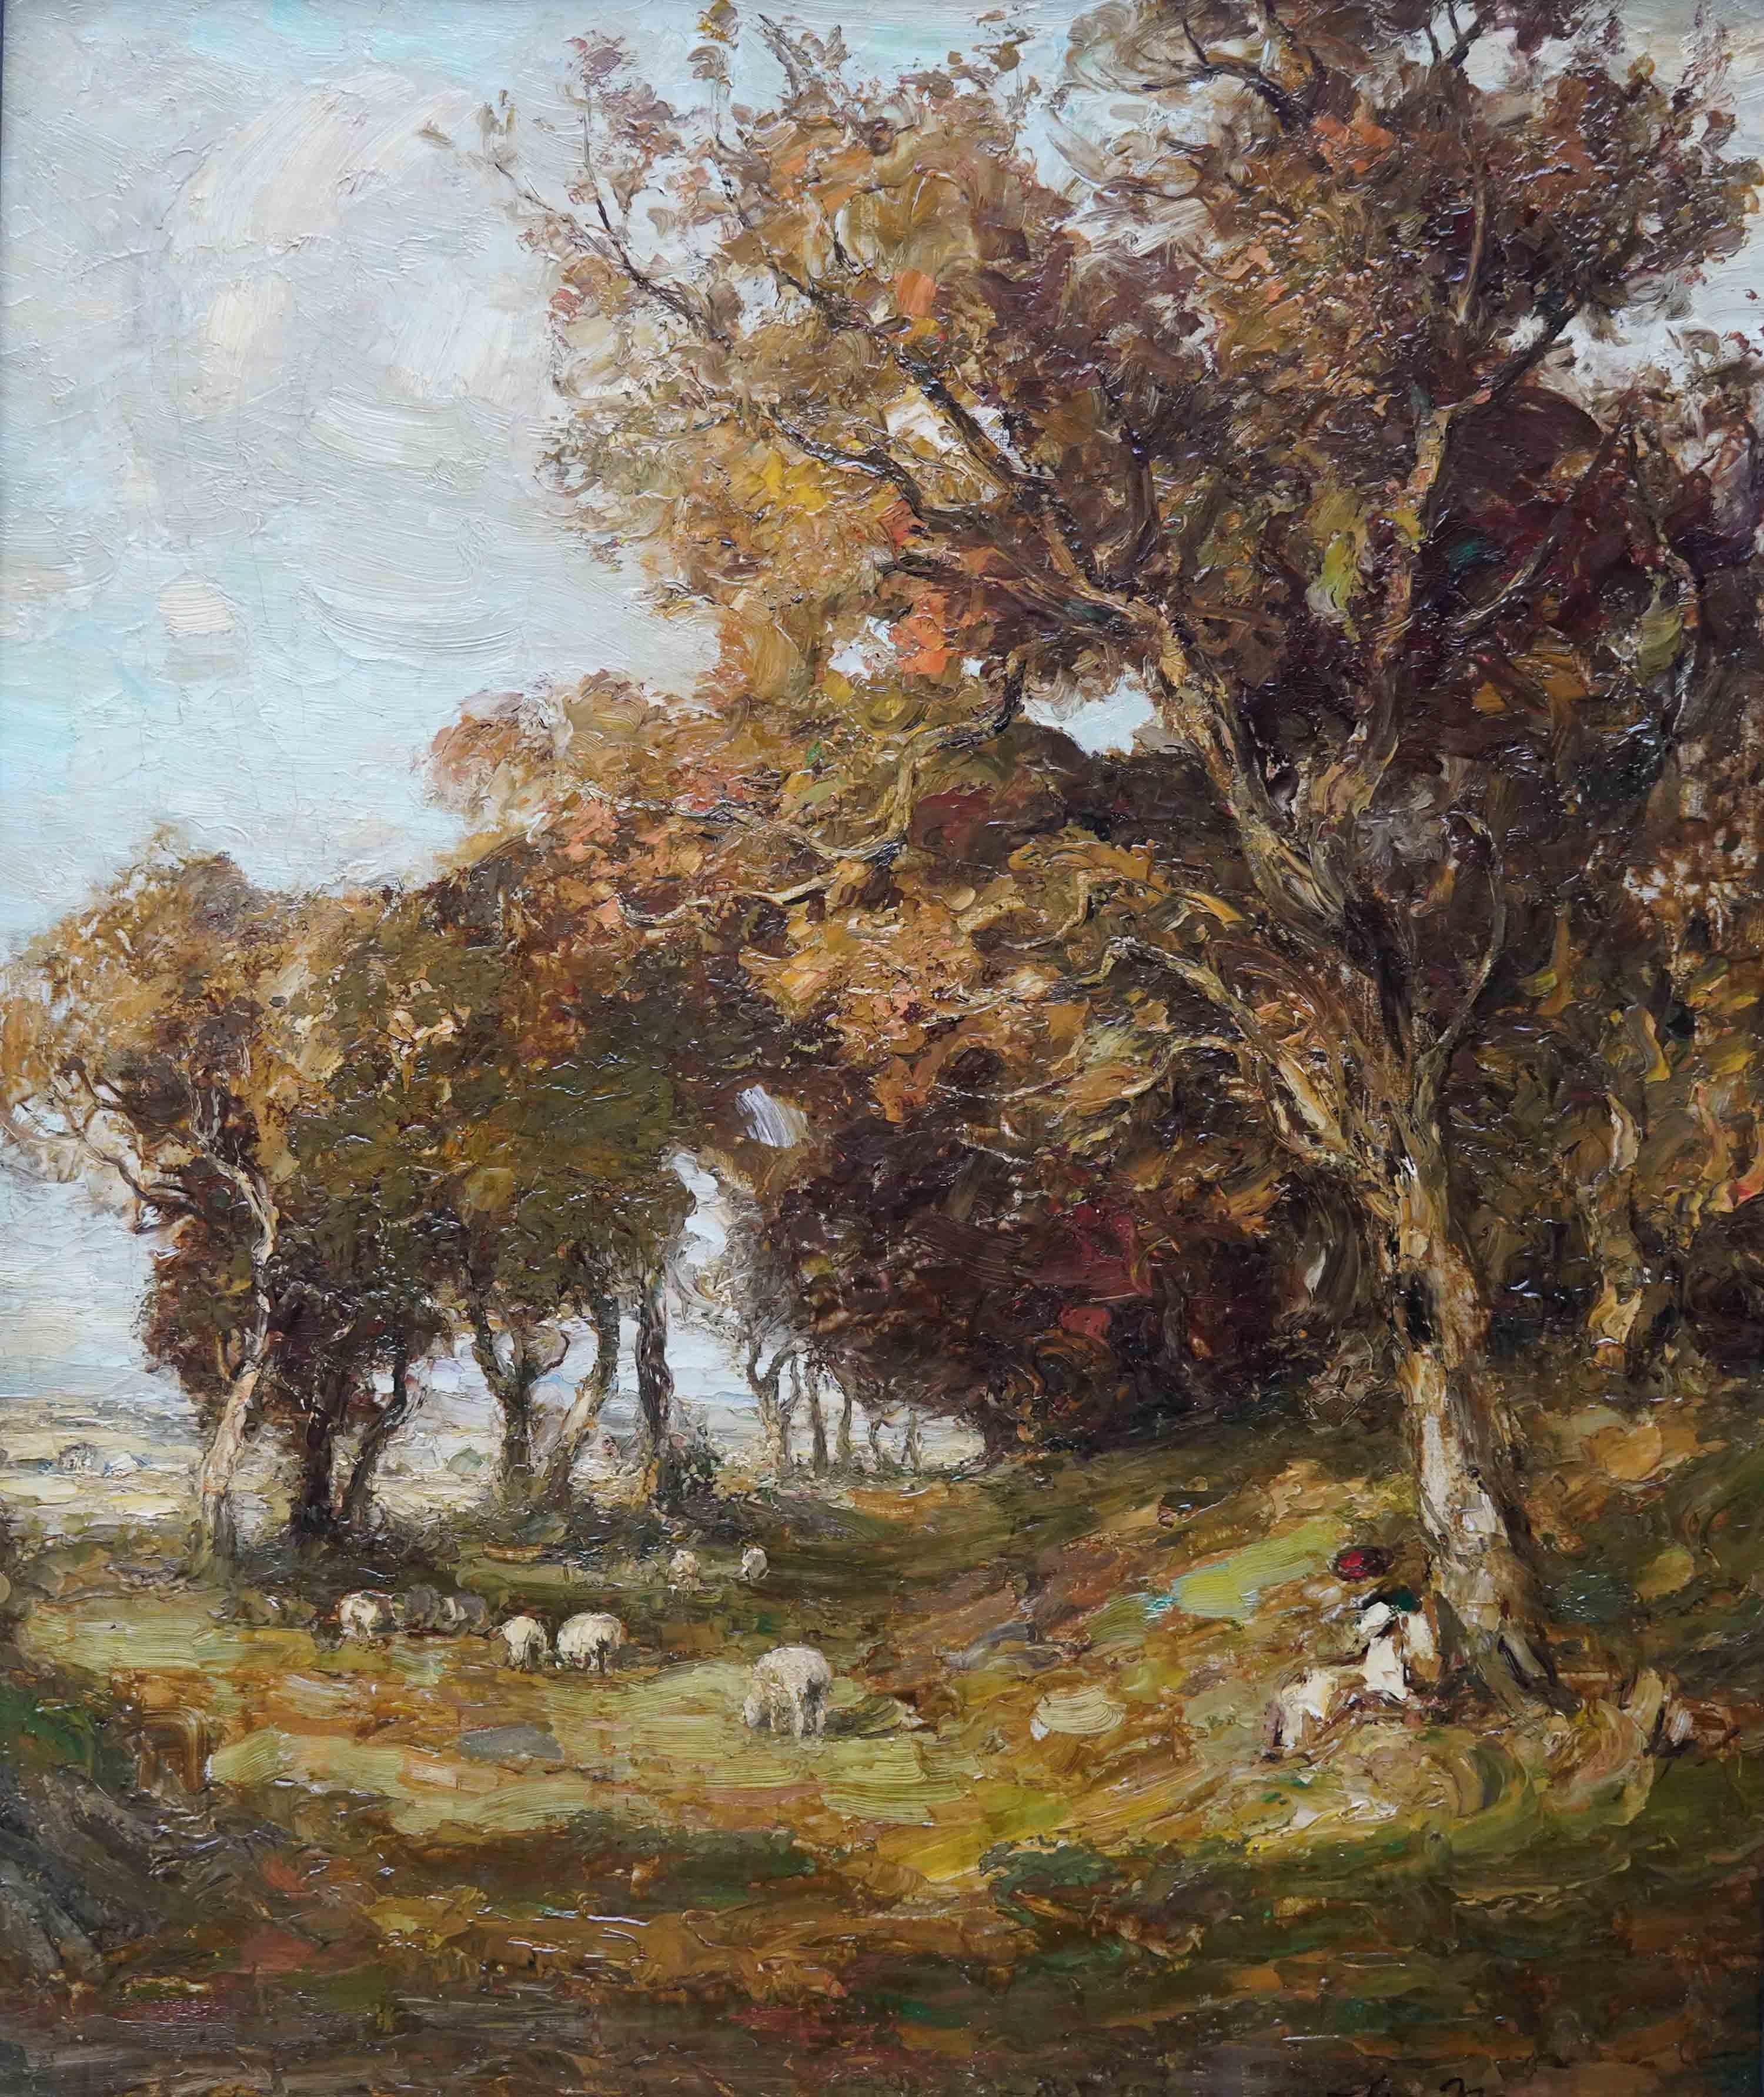 Landschaft mit Schafen – schottisches Ölgemälde von Kirkcudbright, 19. Jahrhundert  – Painting von William Mouncey